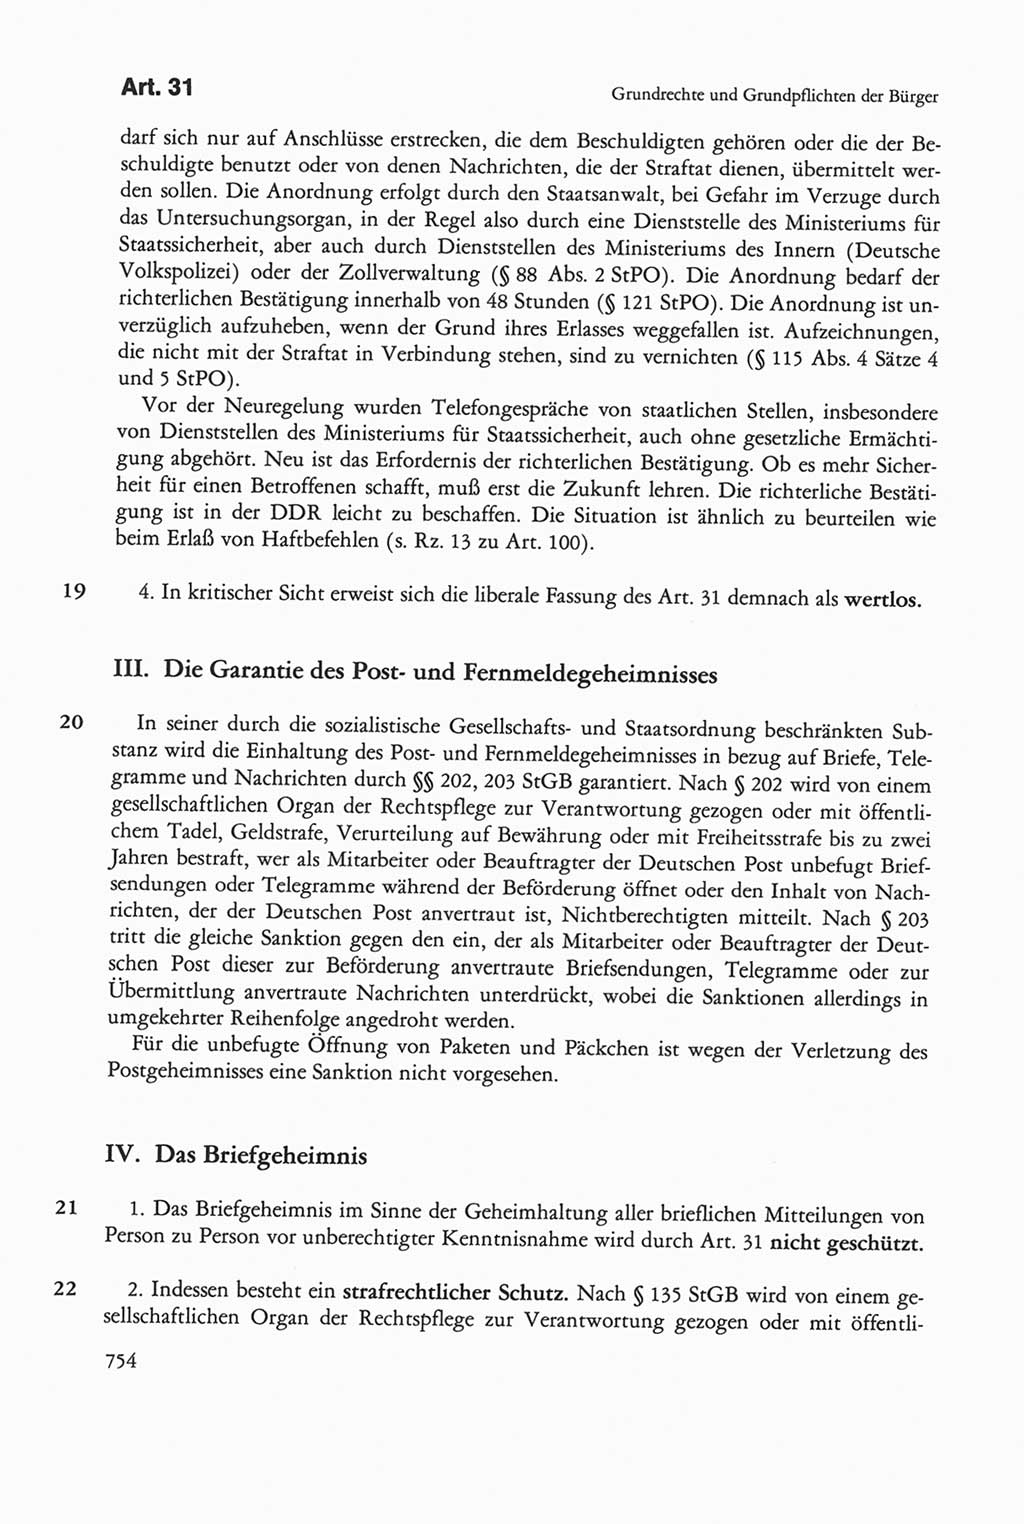 Die sozialistische Verfassung der Deutschen Demokratischen Republik (DDR), Kommentar mit einem Nachtrag 1997, Seite 754 (Soz. Verf. DDR Komm. Nachtr. 1997, S. 754)